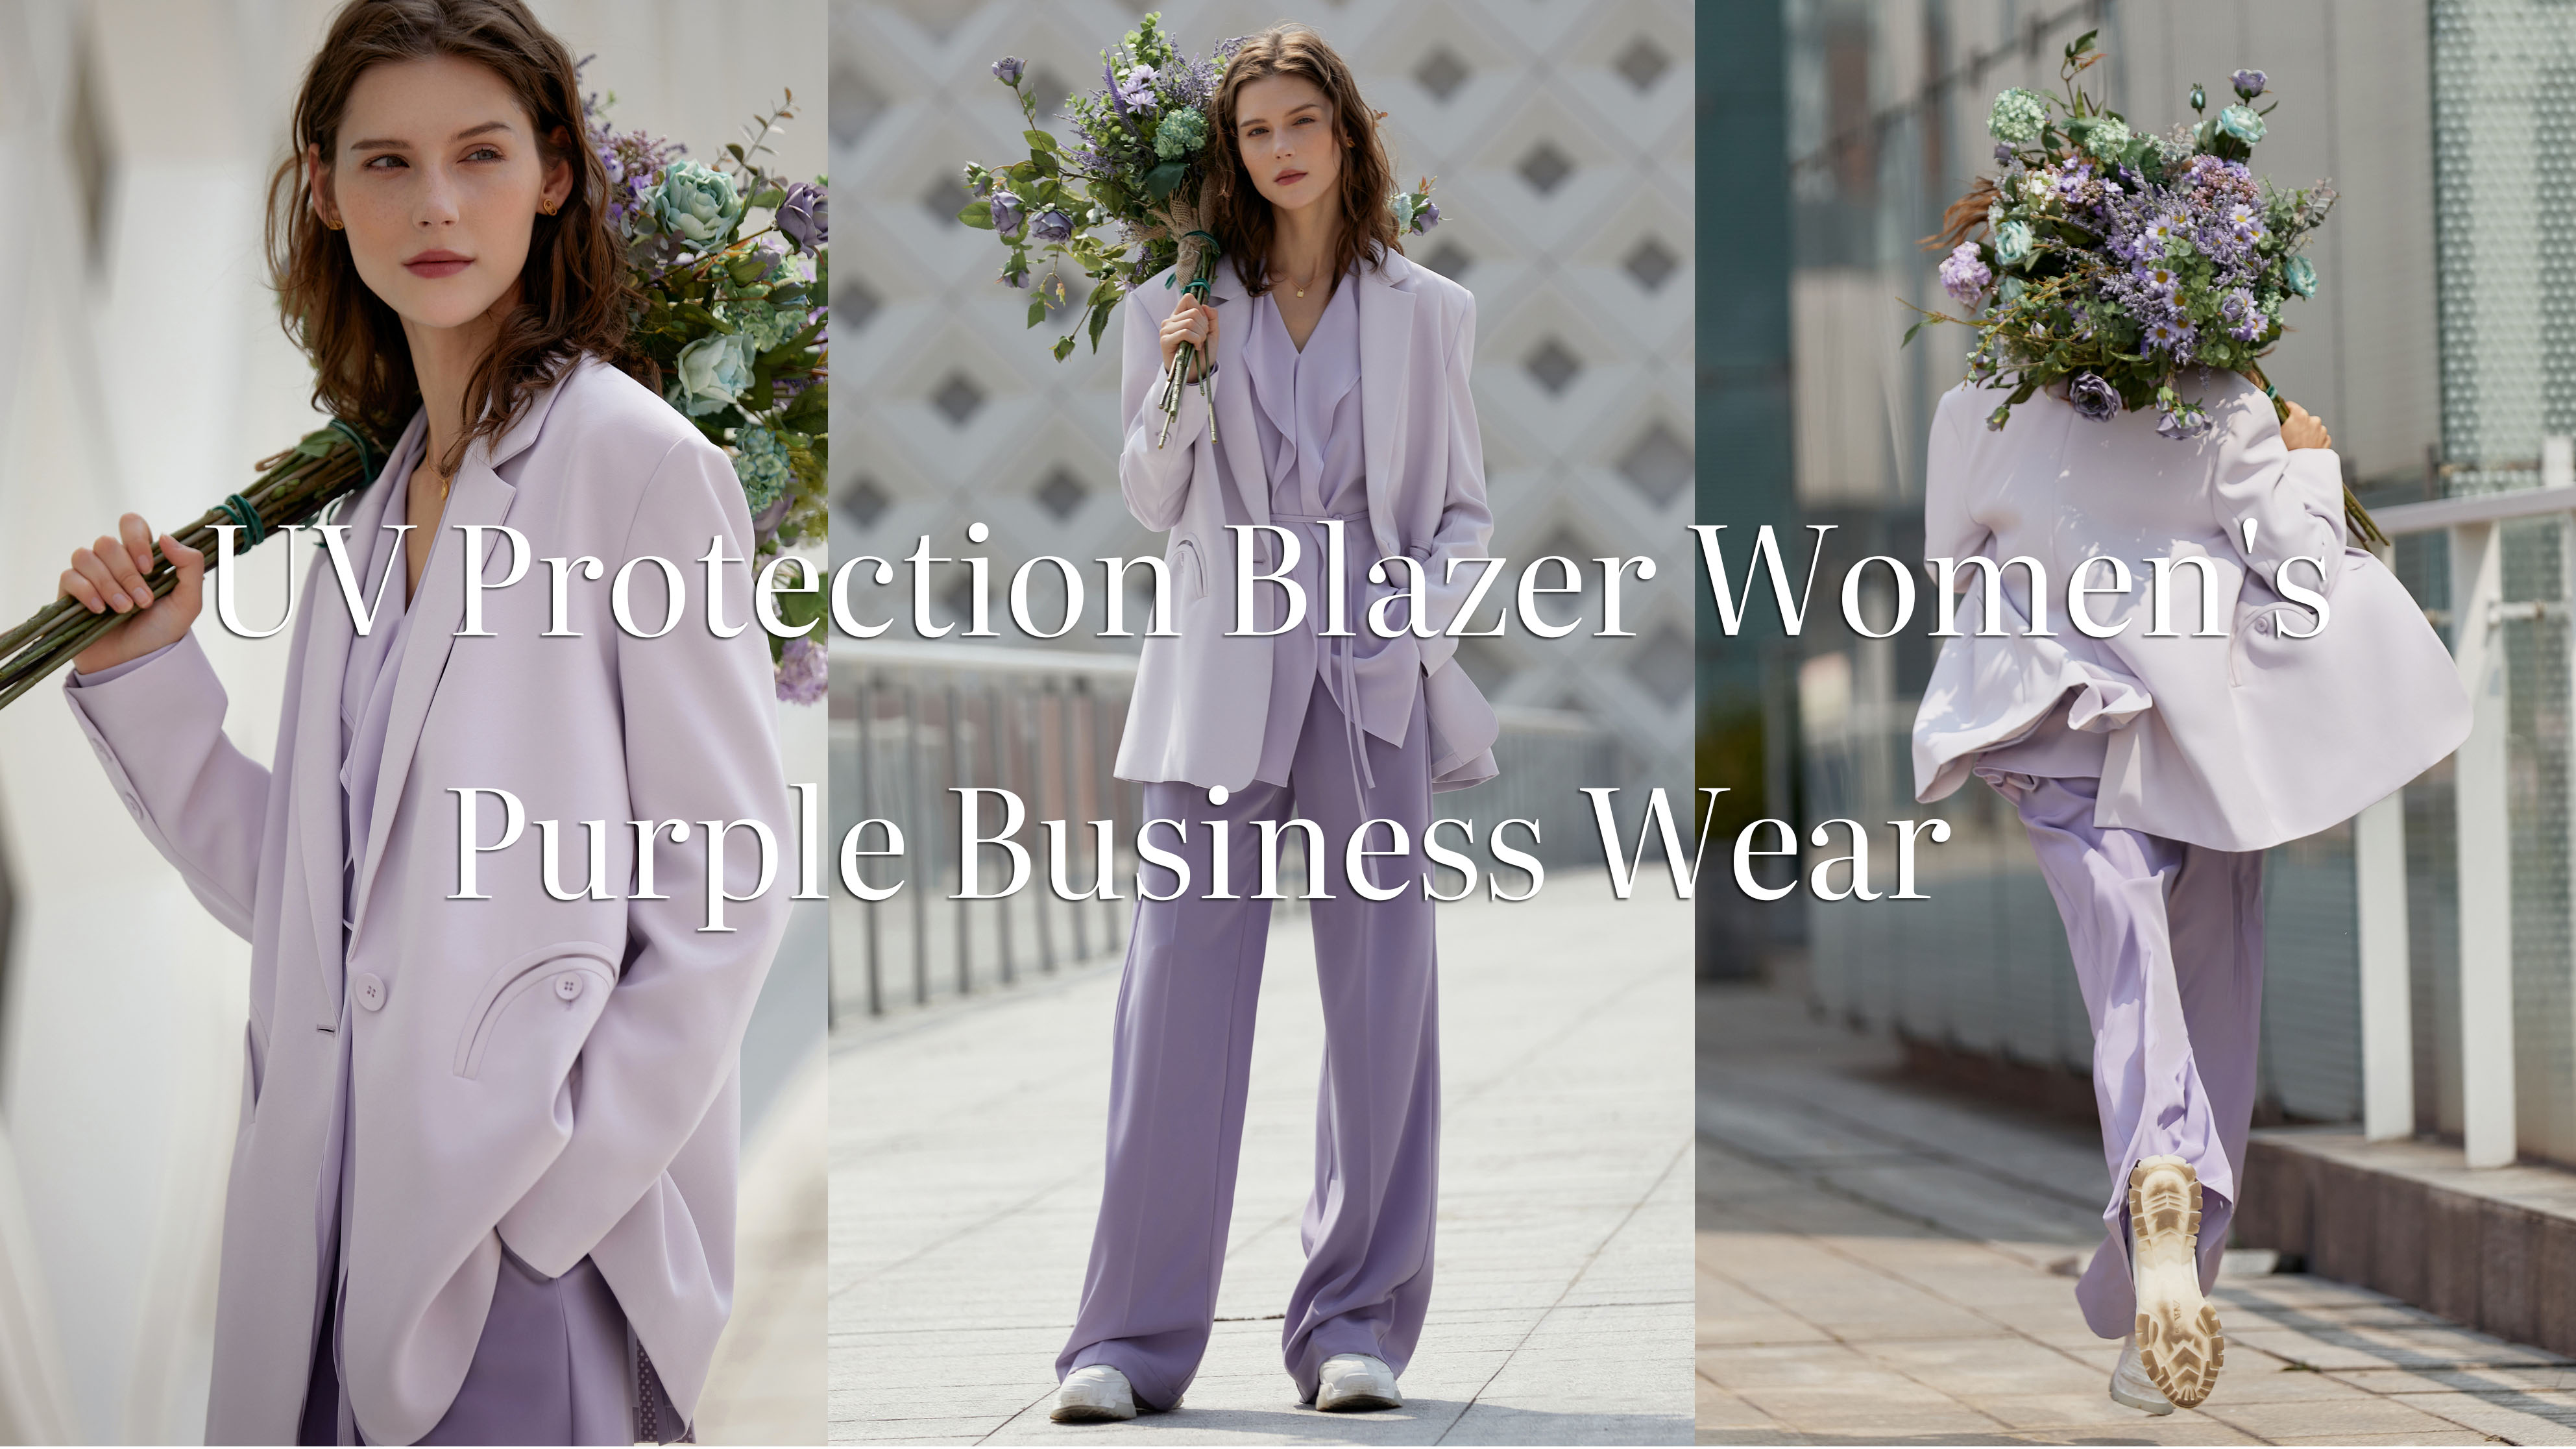 Quality UV Protection Blazer Women's Purple Business Wear Manufacturer | Auschalink